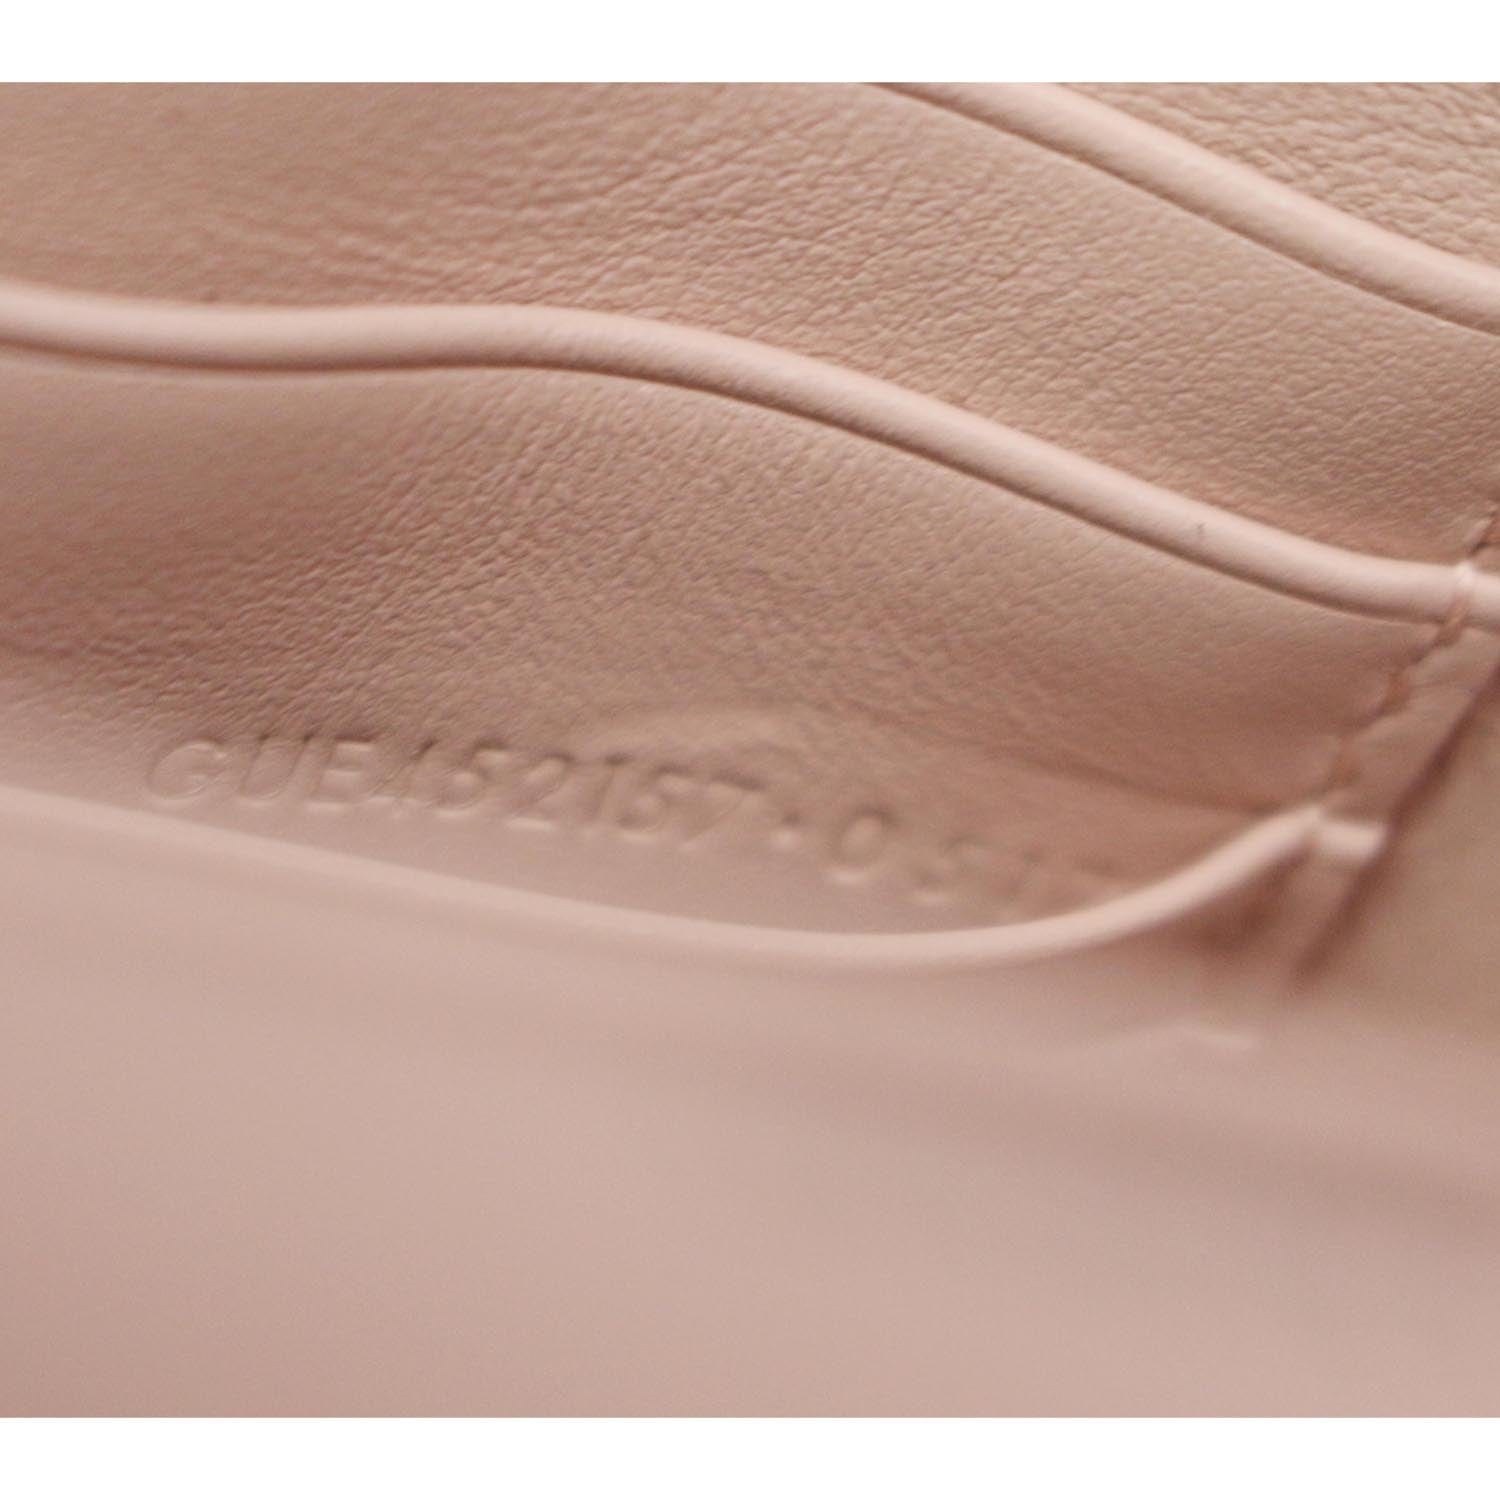 Saint Laurent Sunset Medium Leather Shoulder Bag - Pink - One Size